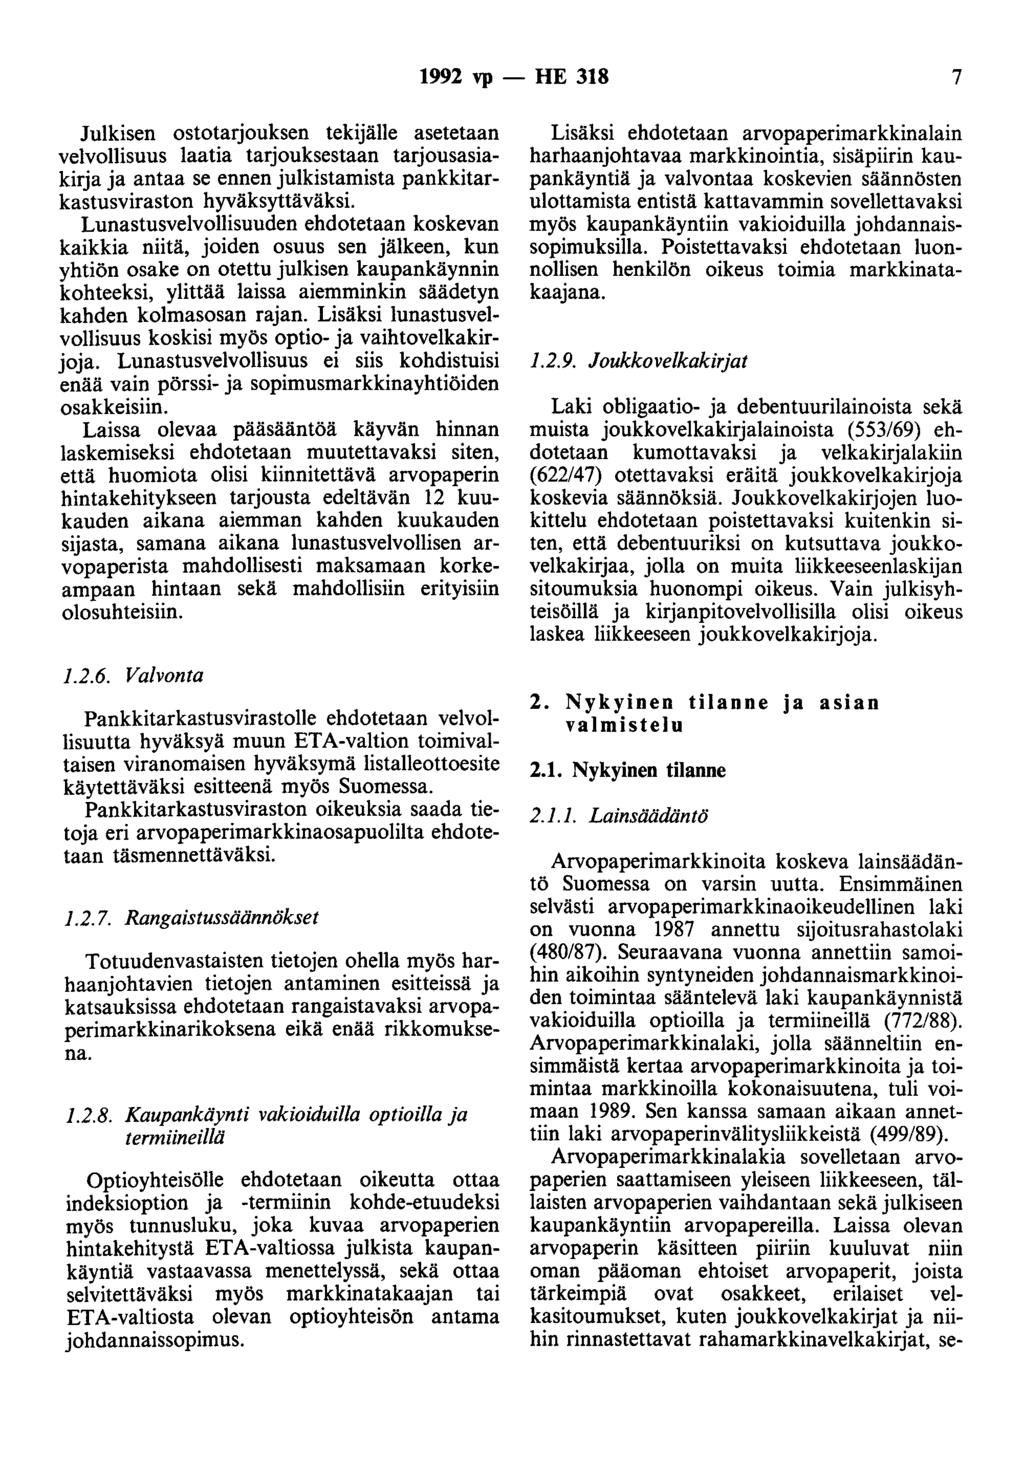 1992 vp - HE 318 7 Julkisen ostotarjouksen tekijälle asetetaan velvollisuus laatia tarjouksestaan tarjousasiakirja ja antaa se ennen julkistamista pankkitarkastusviraston hyväksyttäväksi.